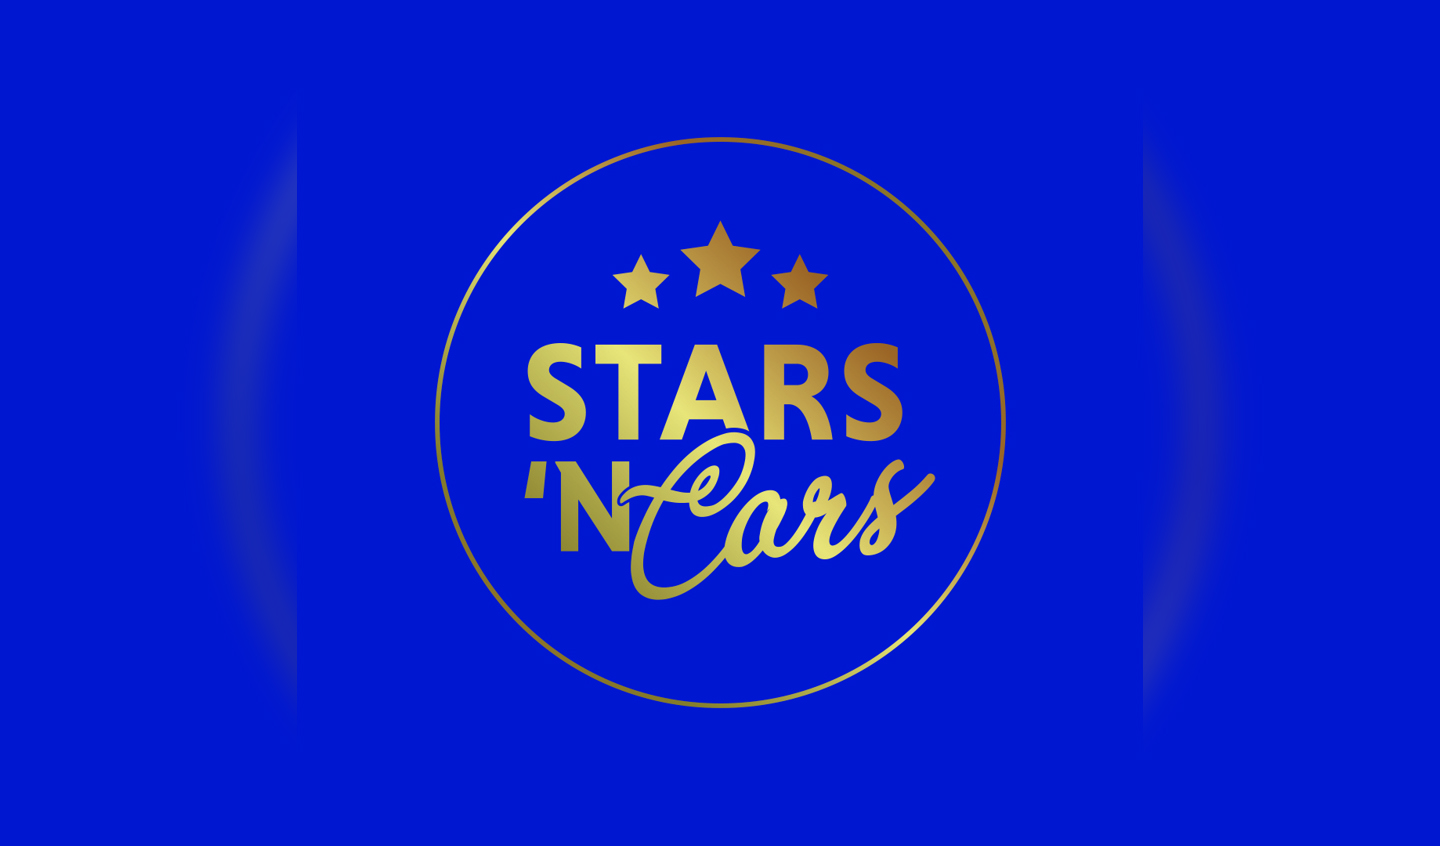 |||Stars 'n Cars - BCBG Events